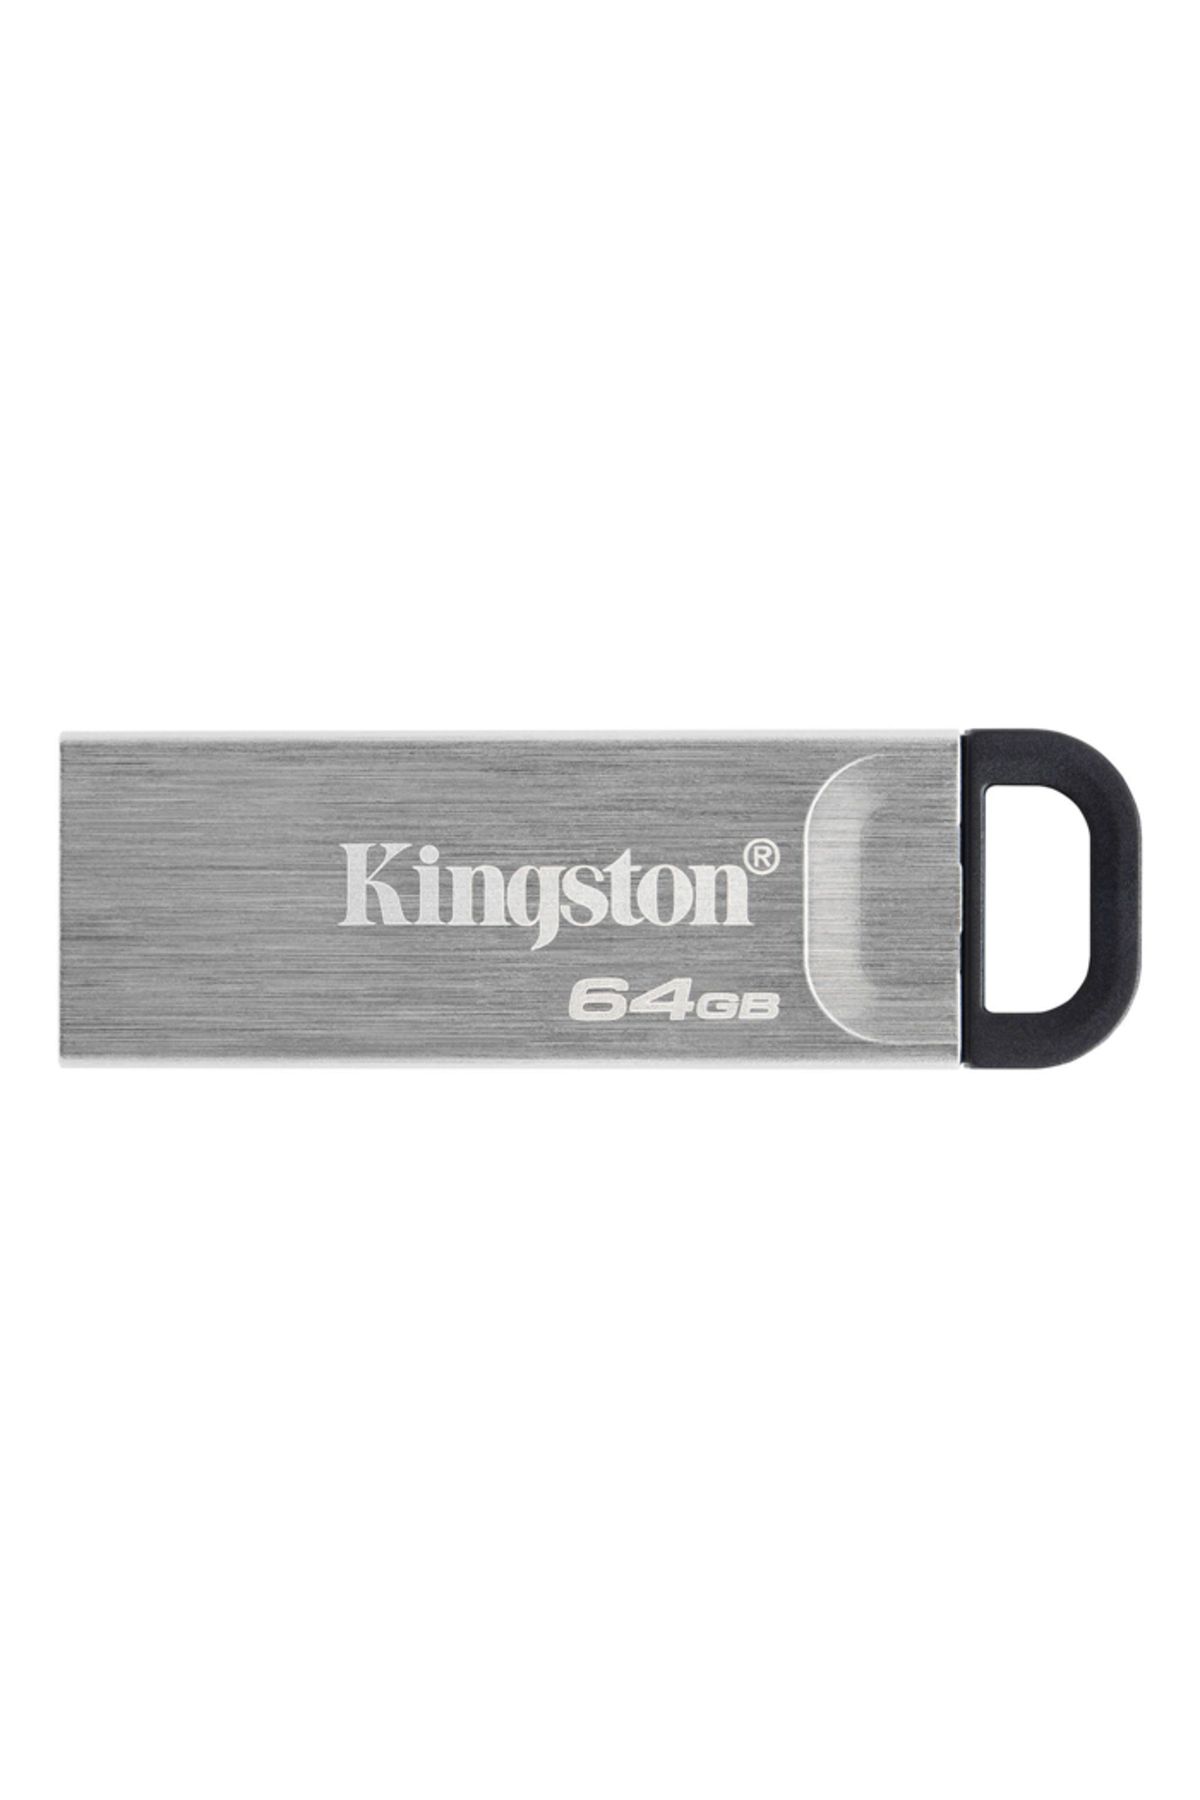 Kingston DTKN 64GB USB 3.2 Gen.1 DataTraveler Kyson Flash Bellek DTKN/64